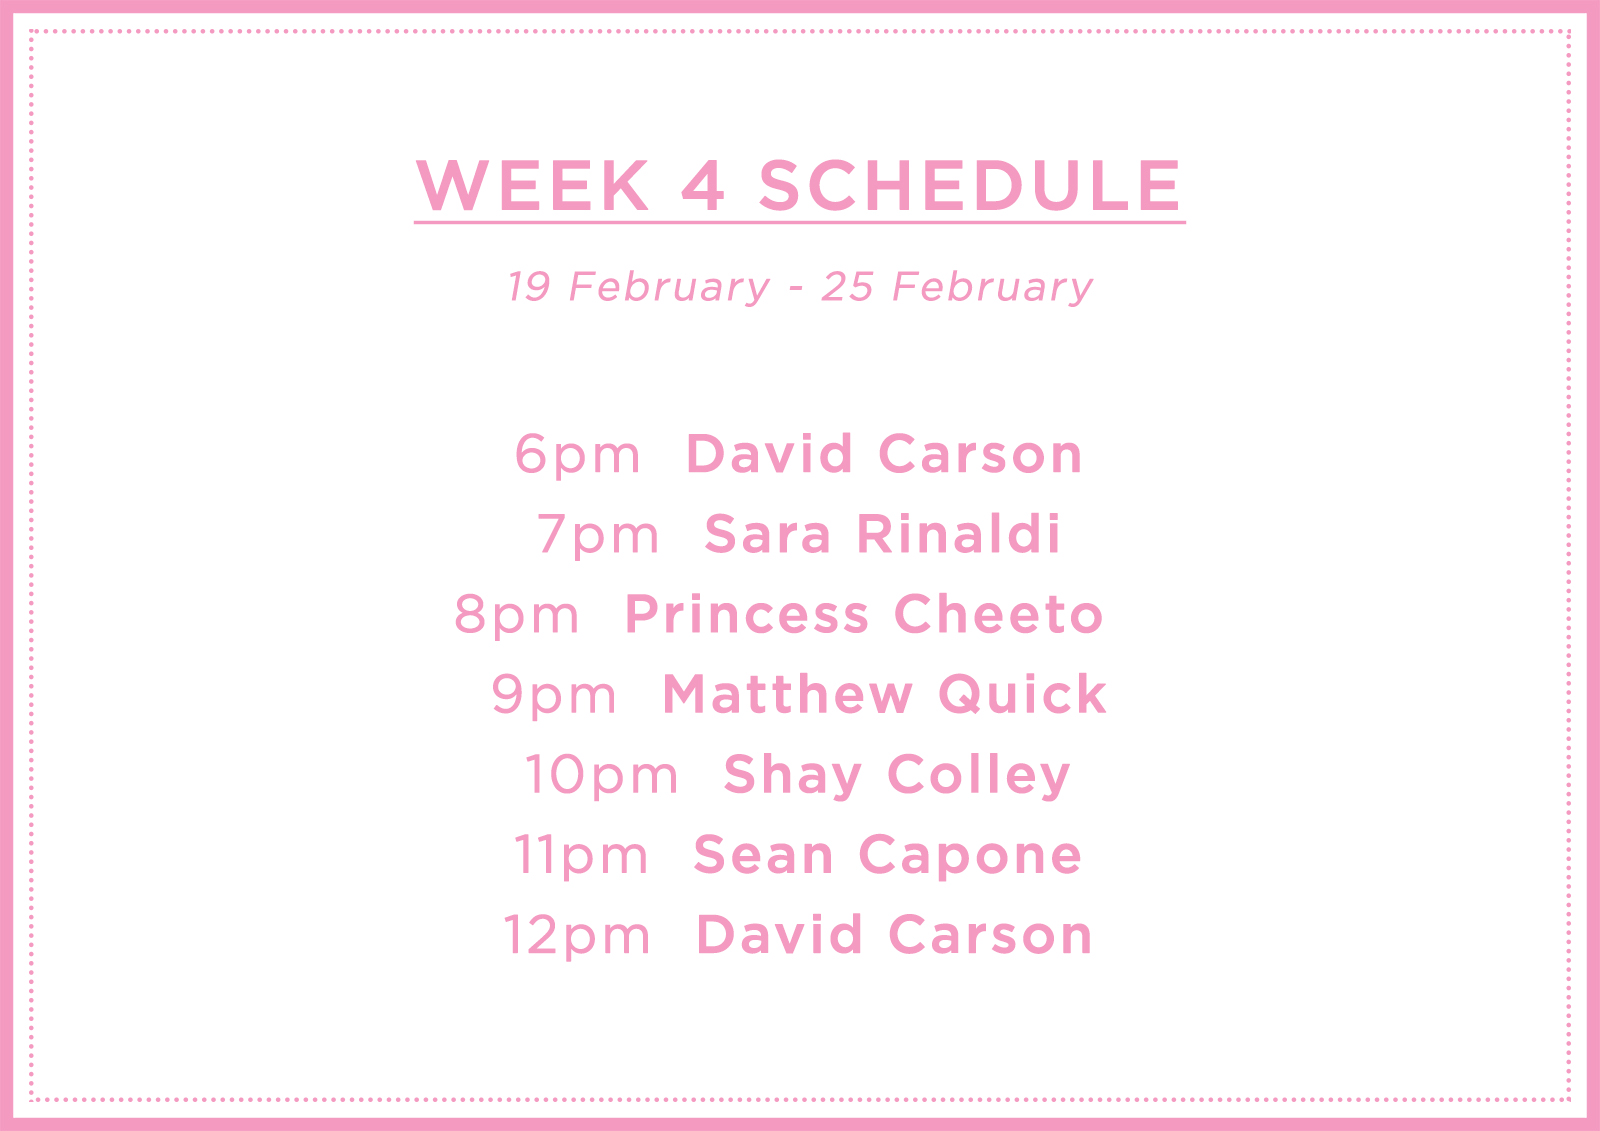 Lightbox Schedule Week 4